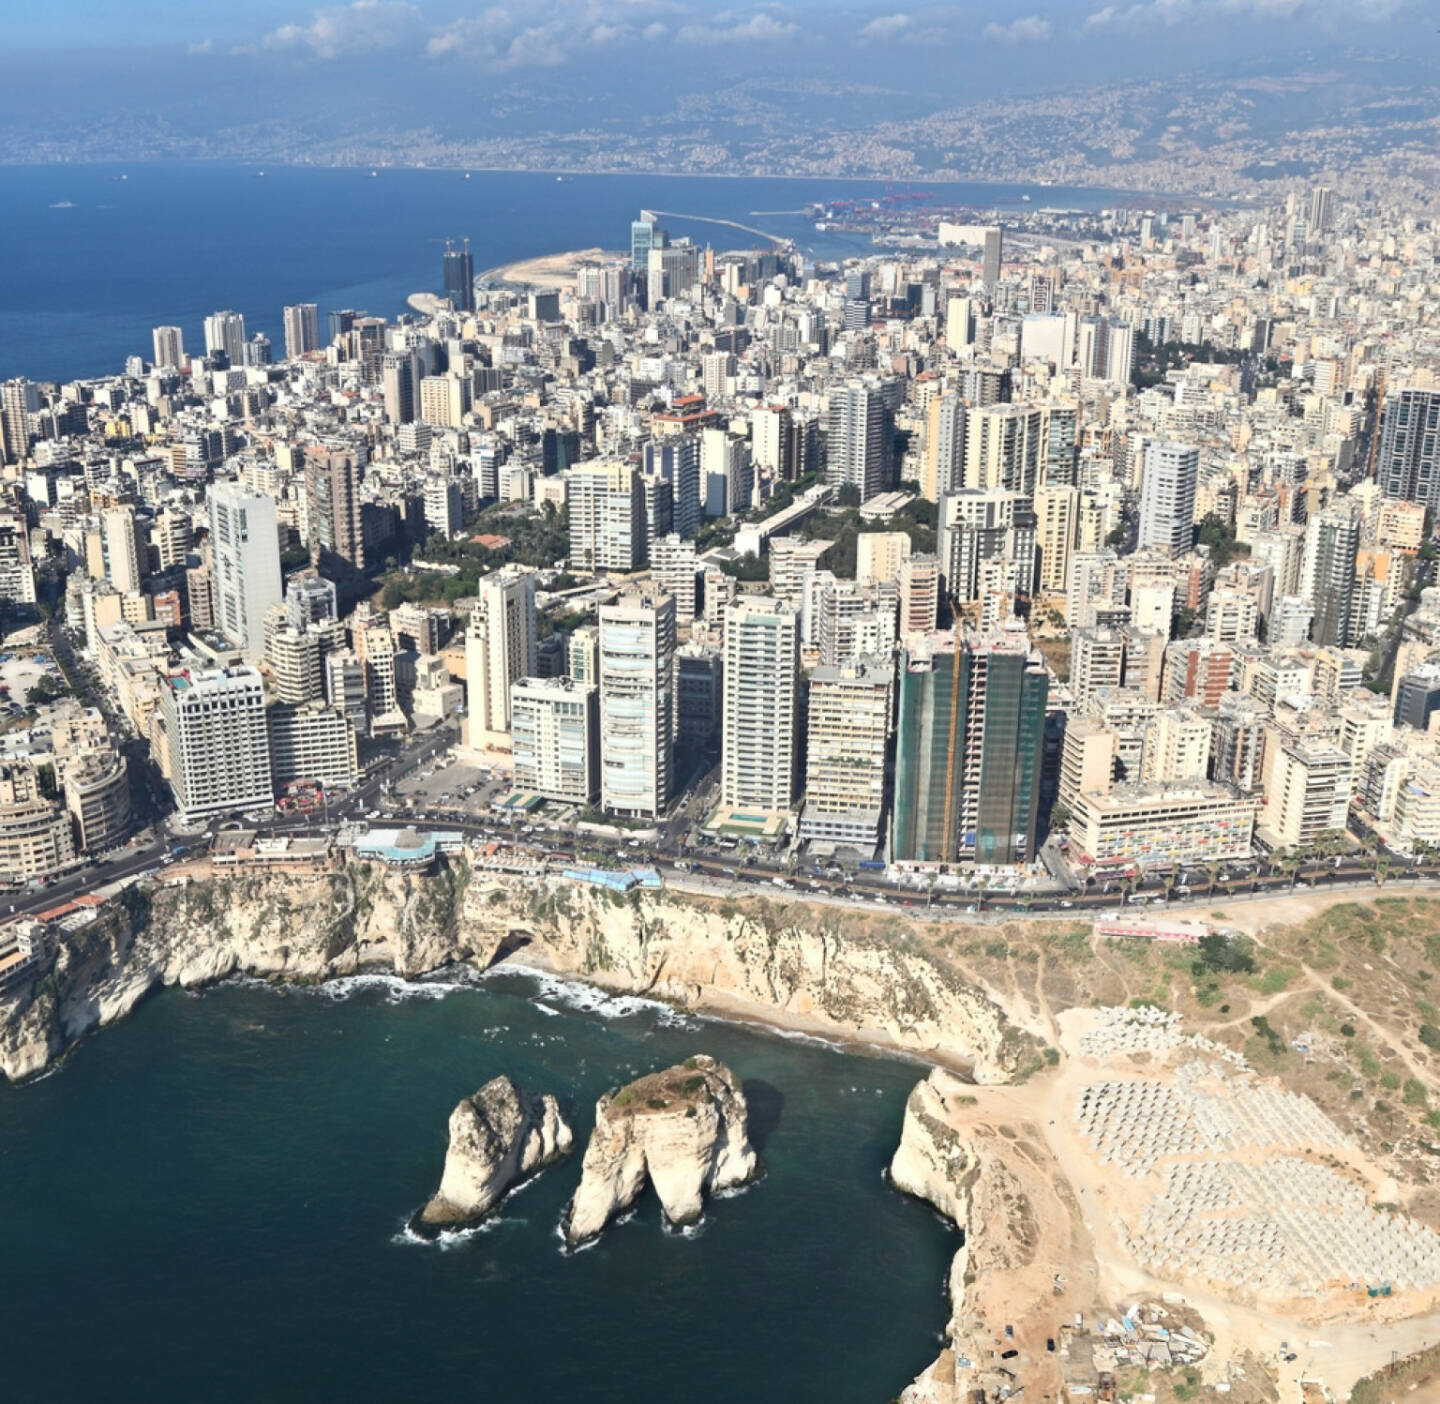 Beirut, Libanon, http://www.shutterstock.com/de/pic-153690737/stock-photo-beirut-lebanon.html 